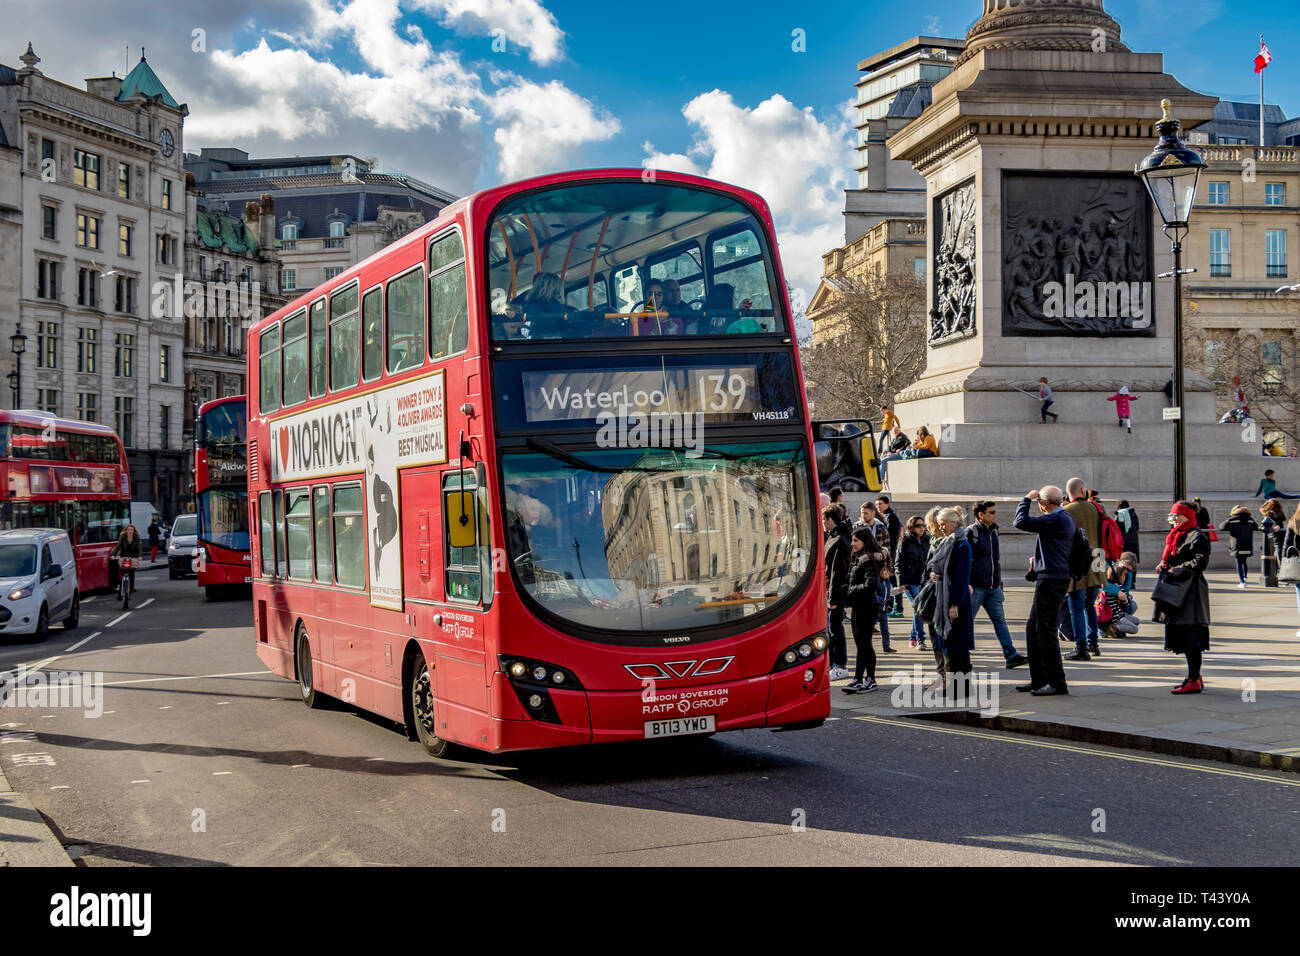 Ein Londoner Bus der Linie 139 fährt auf dem Weg nach Waterloo, London, Großbritannien, am Trafalgar Square vorbei Stockfoto